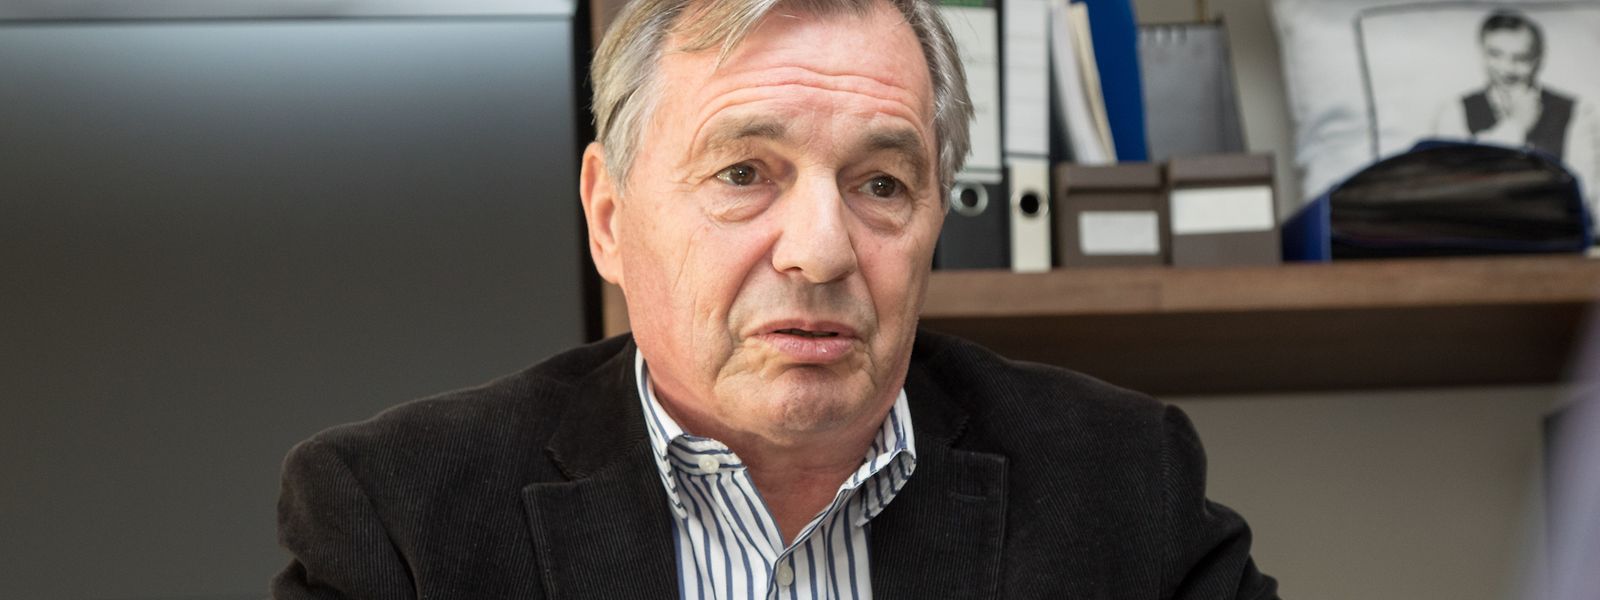 Vorsitzender des Verwaltungsrats Luxemburgs ist der ehemalige Wirtschaftsminister Jeannot Krecké.  